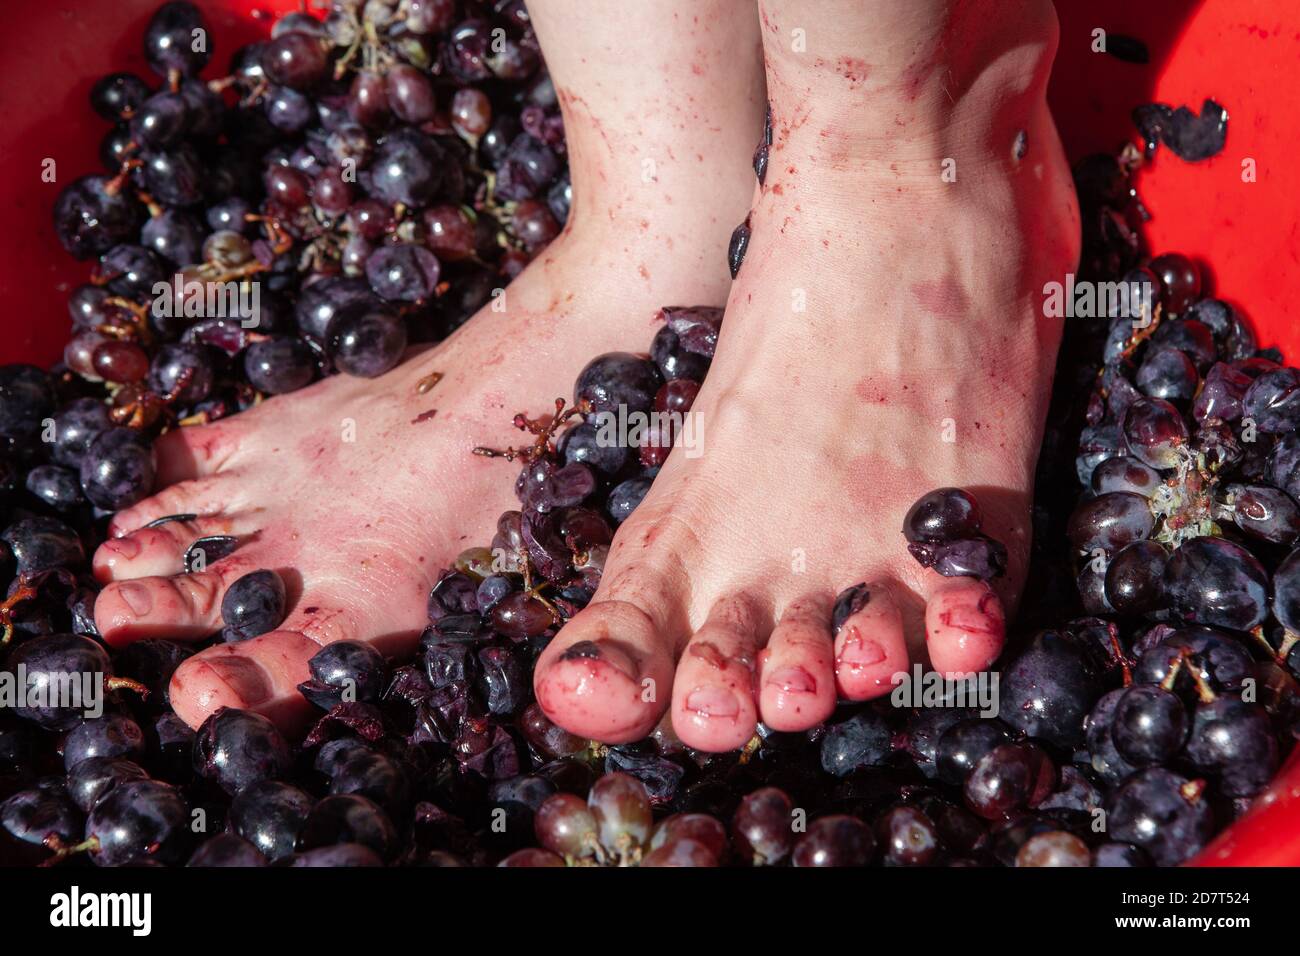 Frau zerquetscht die Füße der Trauben, um Wein zu machen Stockfoto